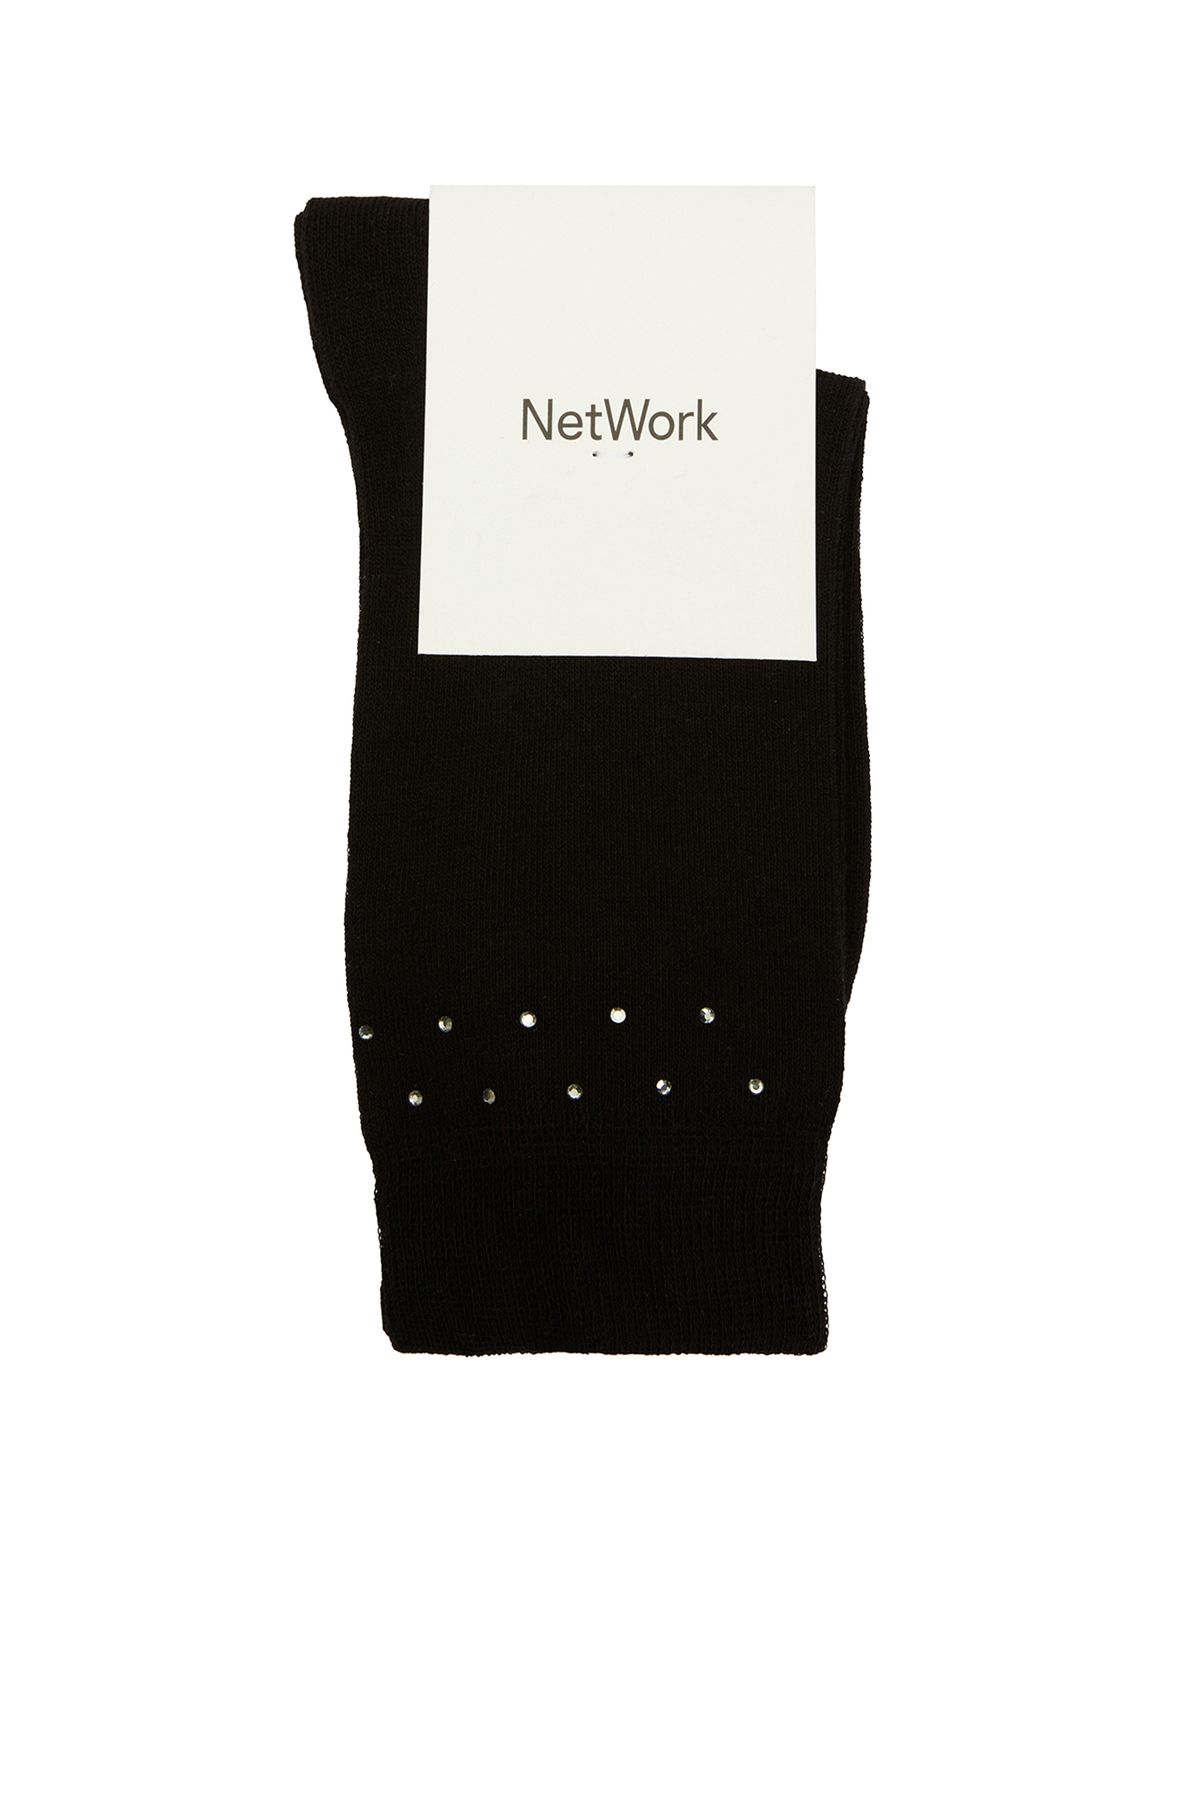 Network Siyah Desenli Kadın Çorap